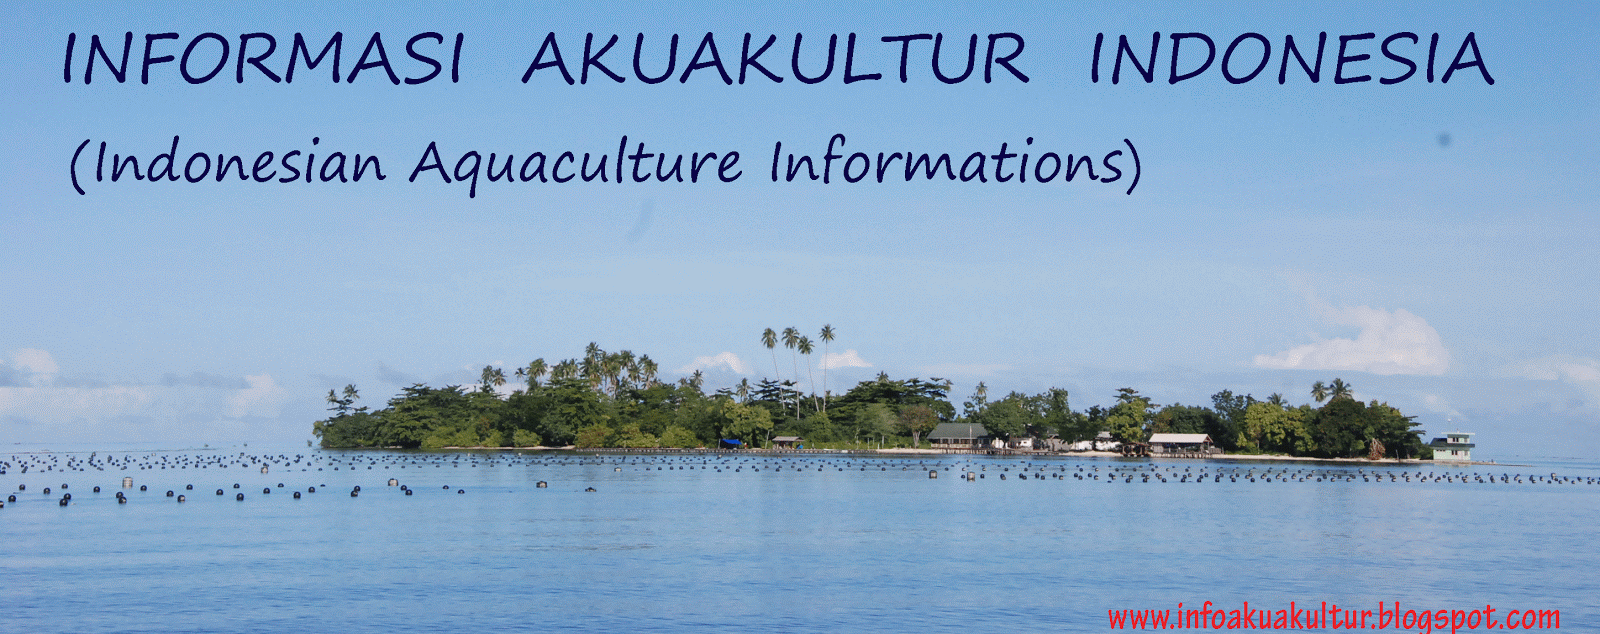 Informasi Perikanan Budidaya Indonesia (Indonesian Aquaculture Informations)